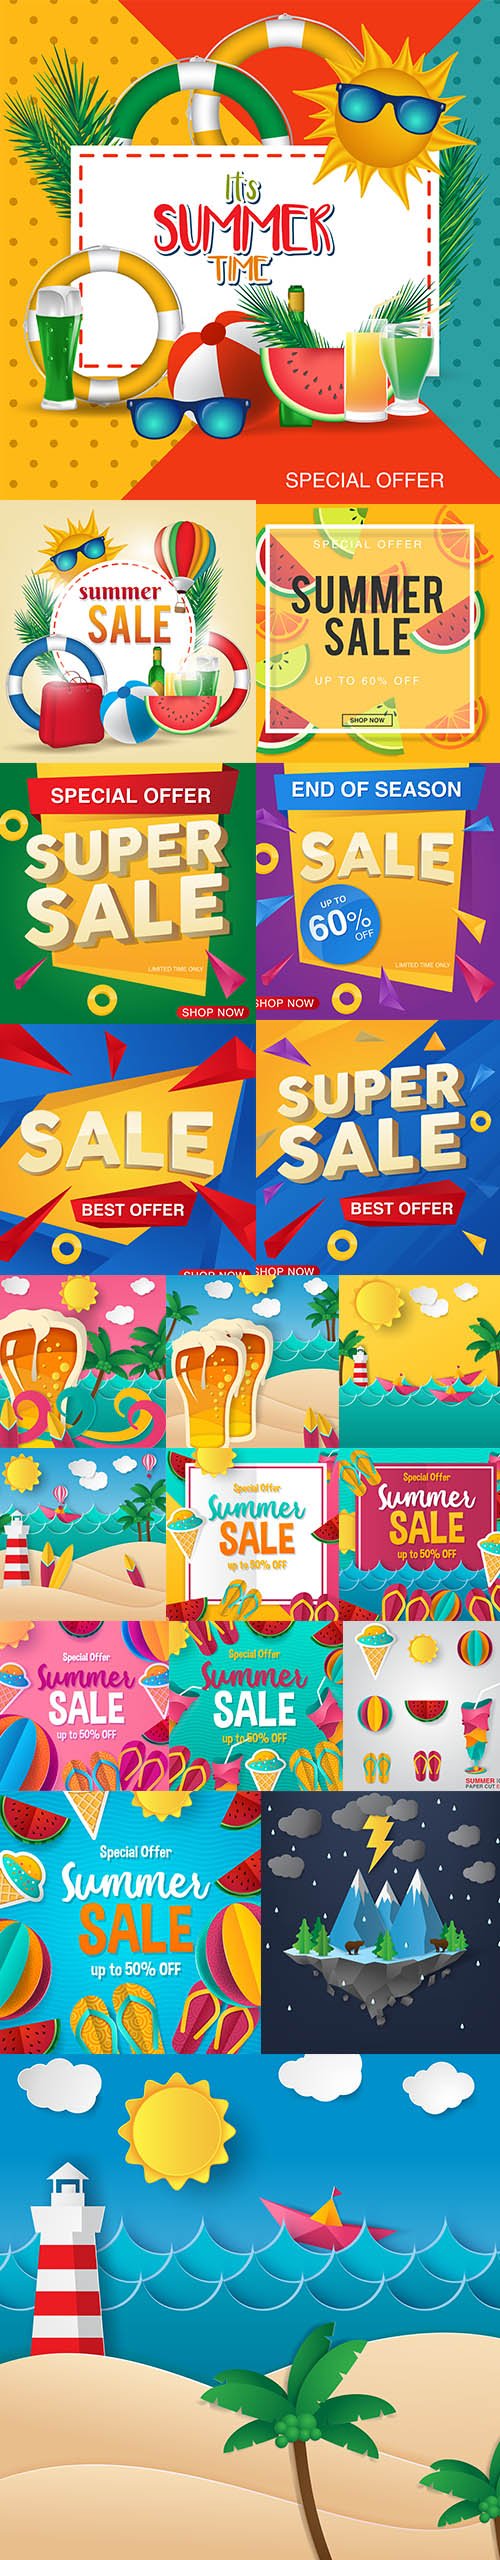 Summer Sale Vector Banner Design Illustrations